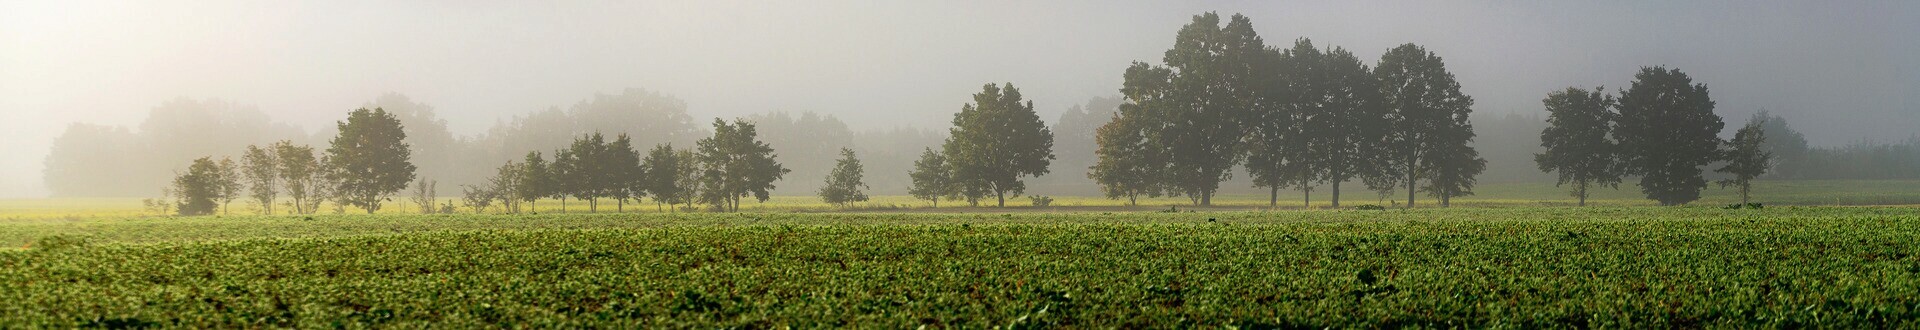 Baner top Gminy Dobrcz. Widok na drzewa w mgle.